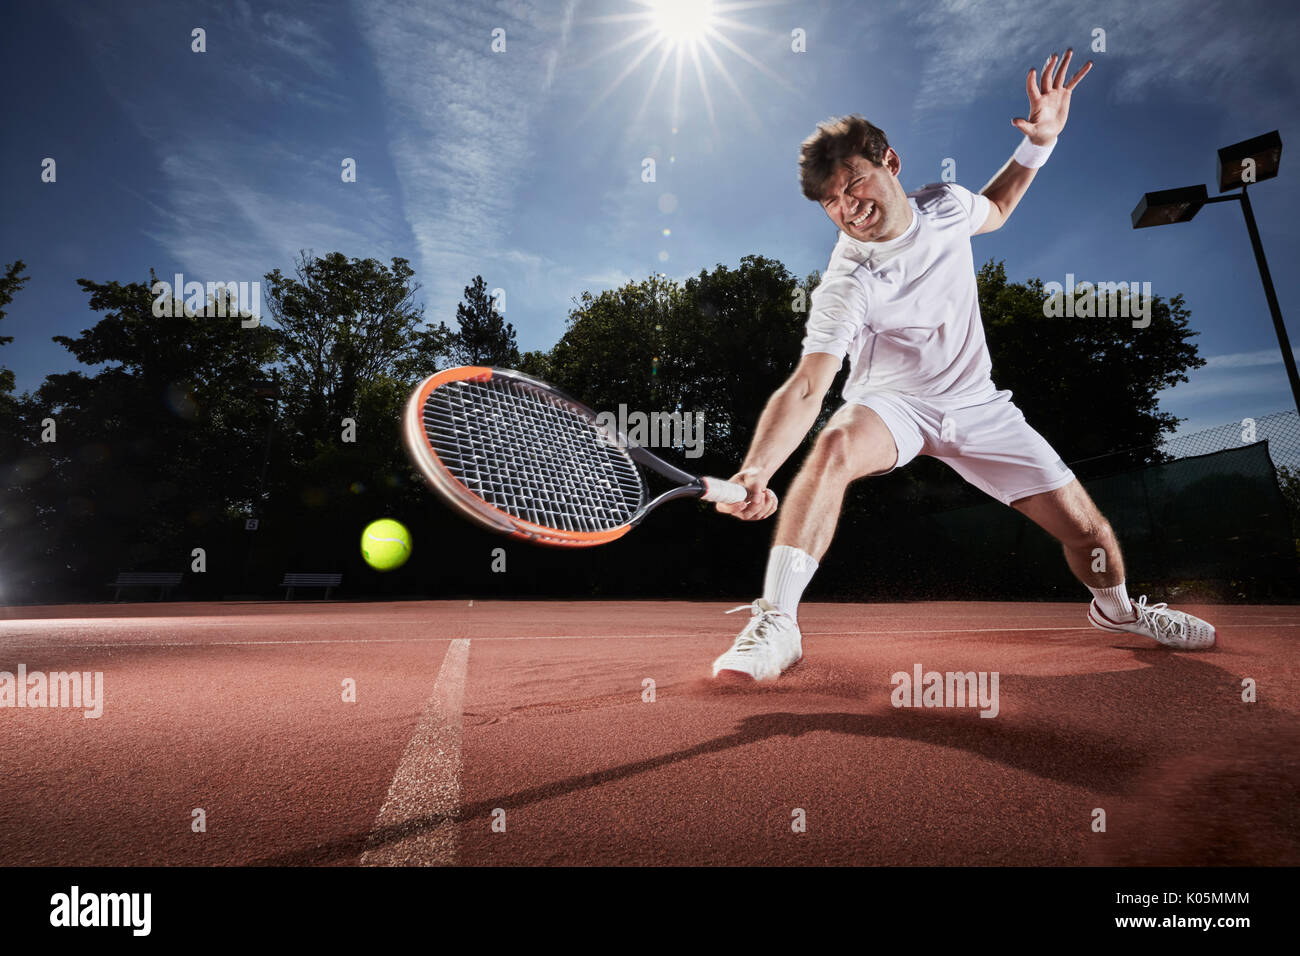 Jeune homme jouant au tennis, pour atteindre avec raquette de tennis sur terre battue Banque D'Images